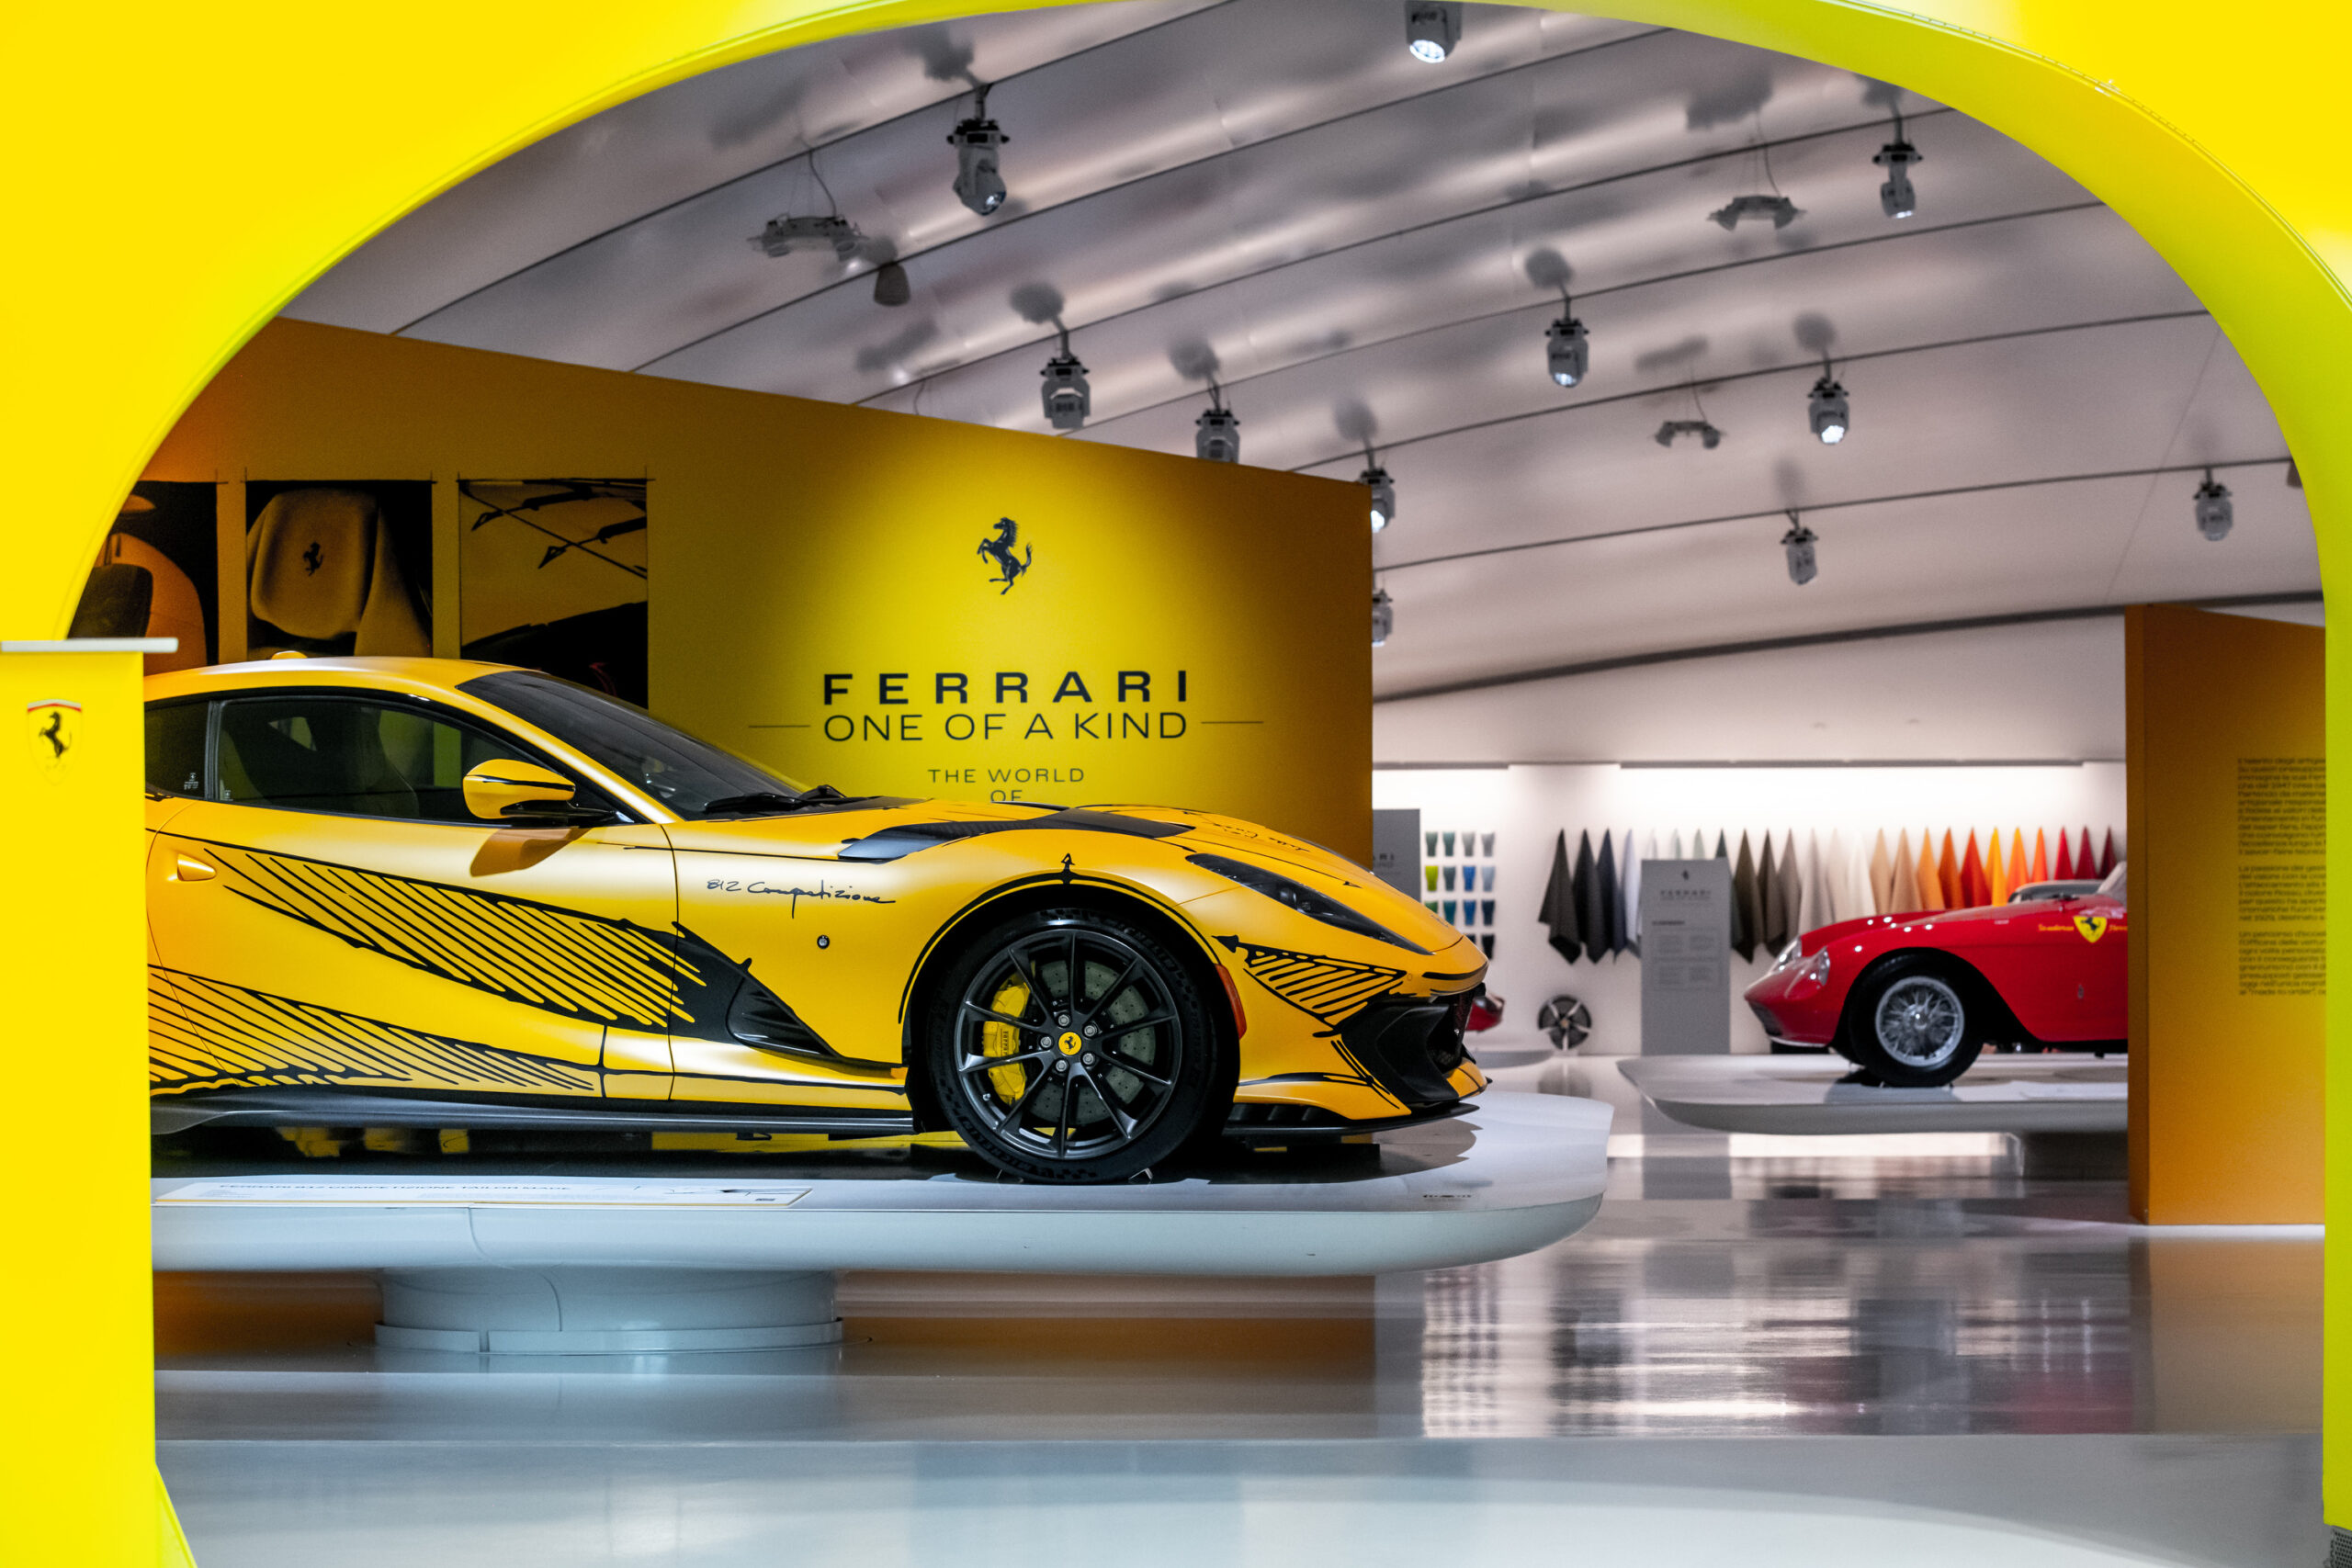 Il Museo Enzo Ferrari inaugura “Ferrari One of a Kind”, la mostra dedicata a celebrare l’unicità del brand